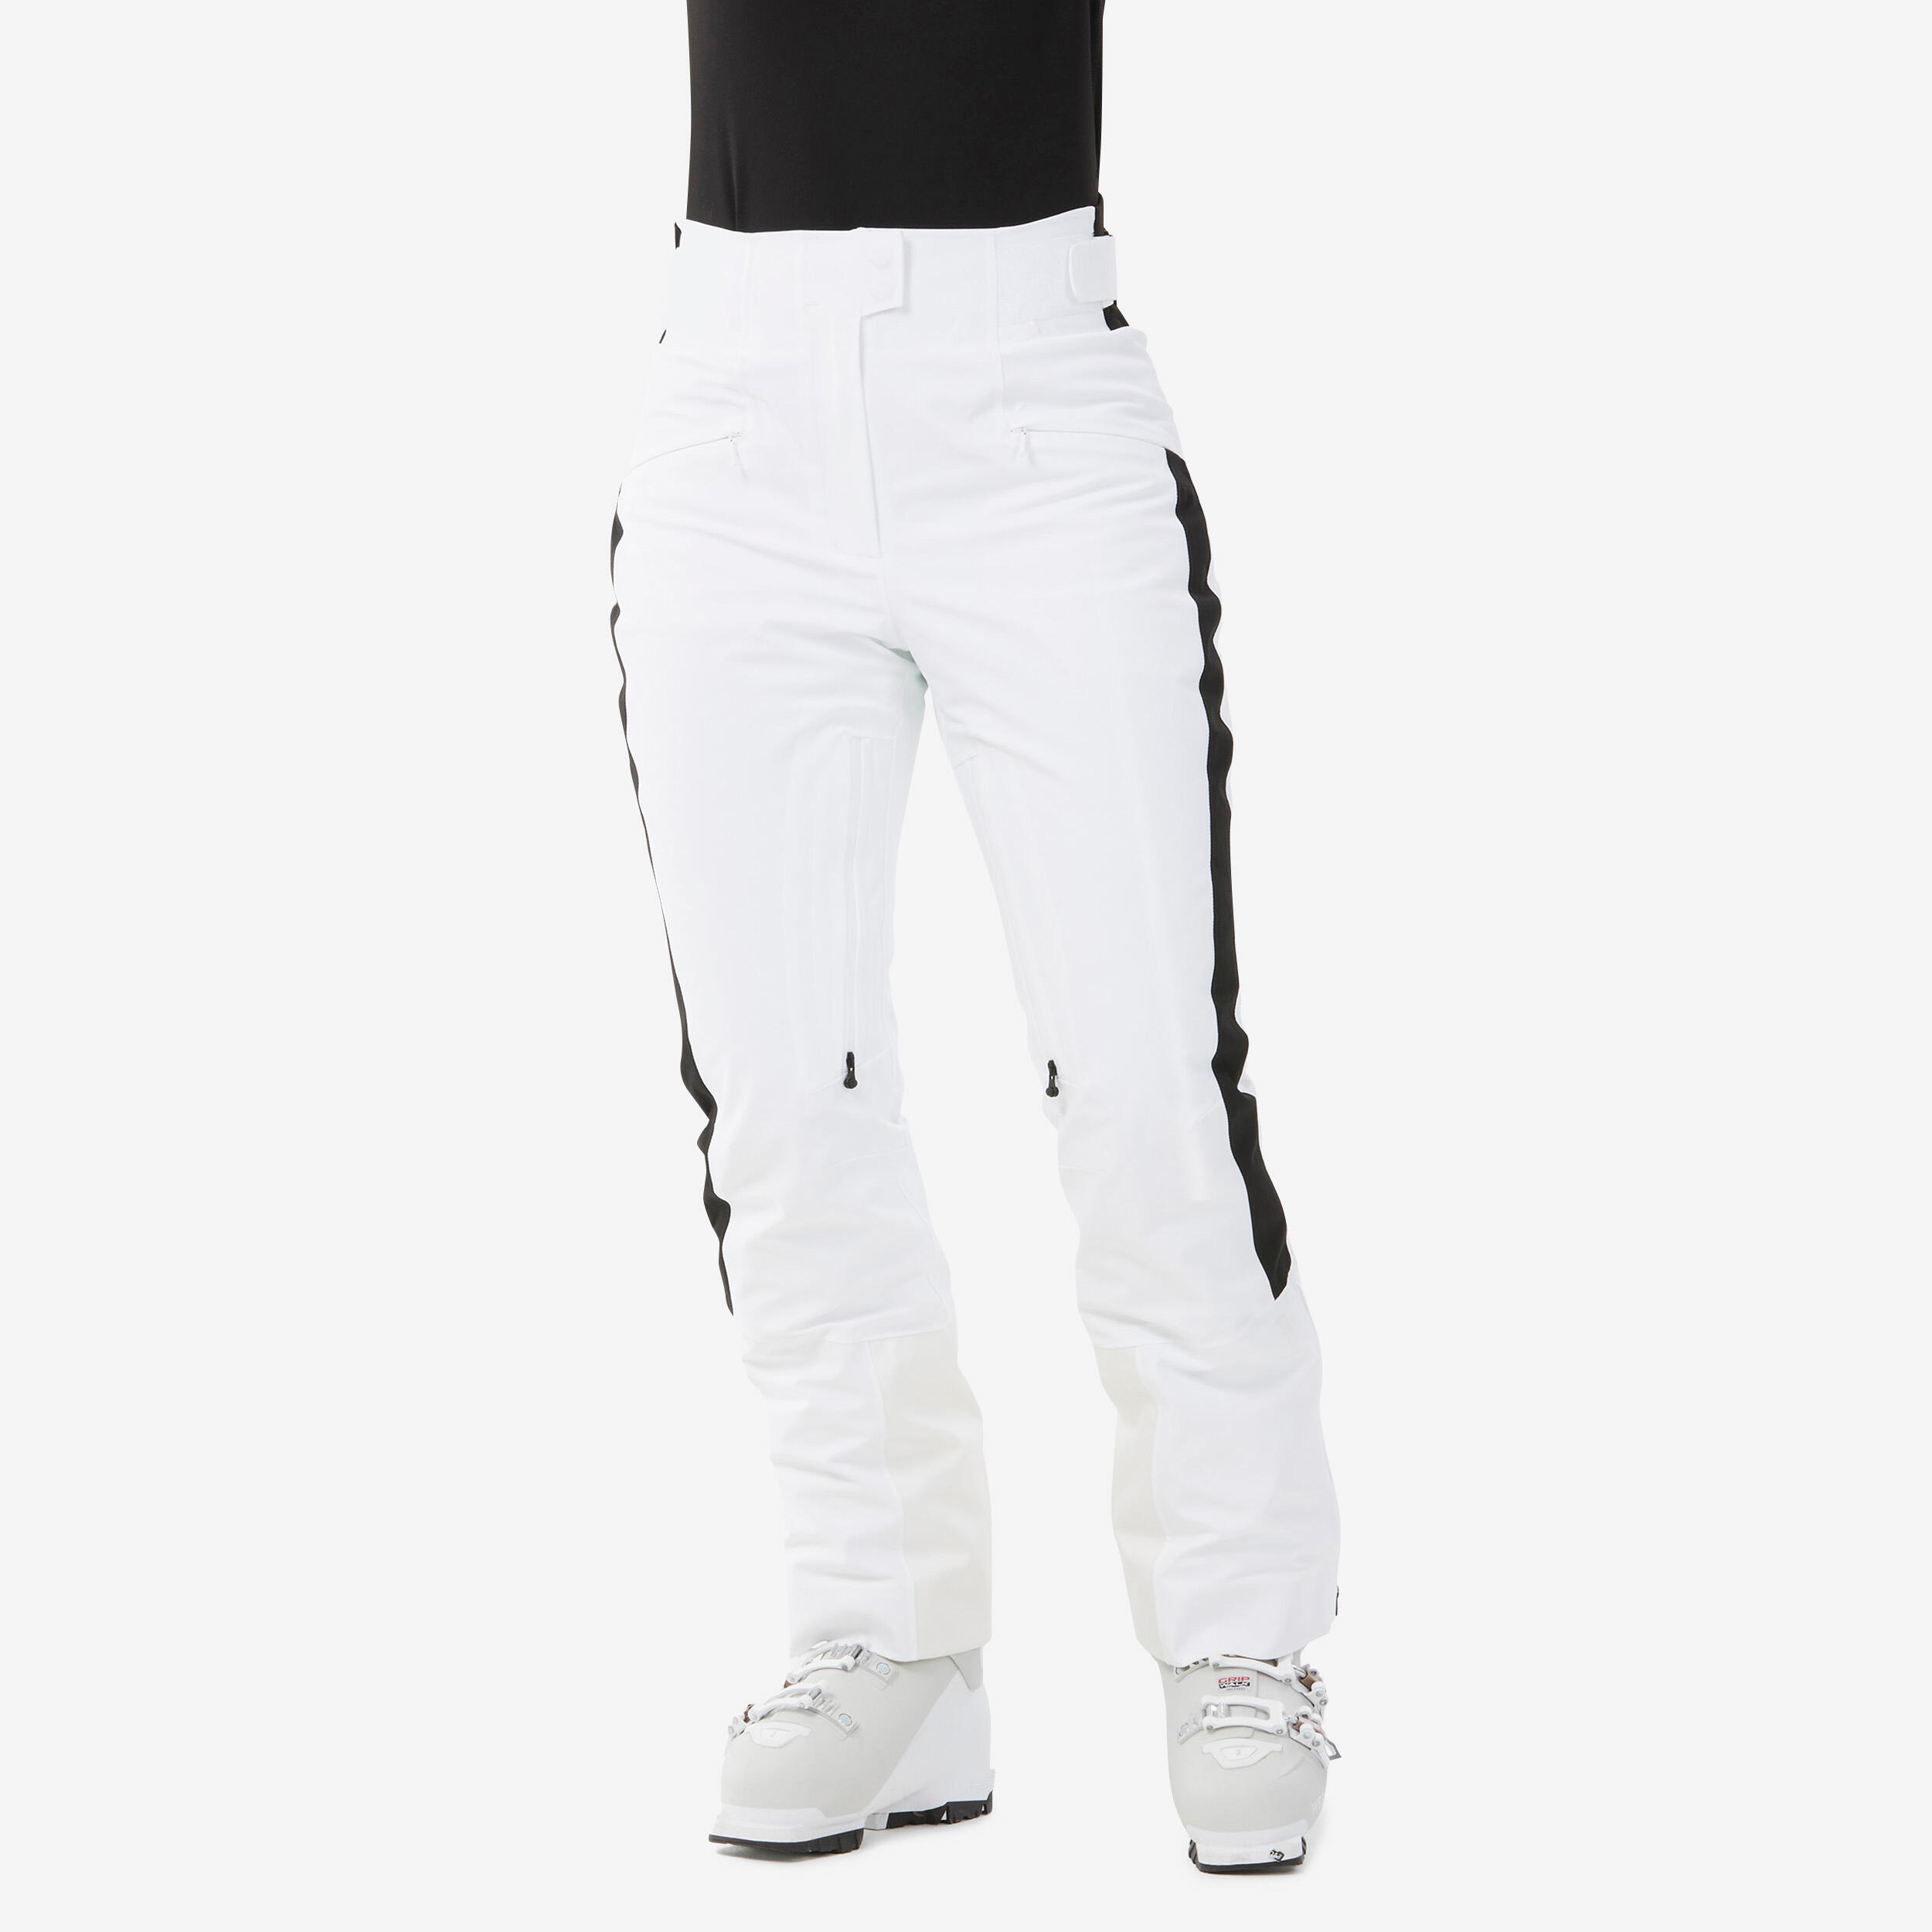 WEDZE Women’s Ski Trousers 900 - White